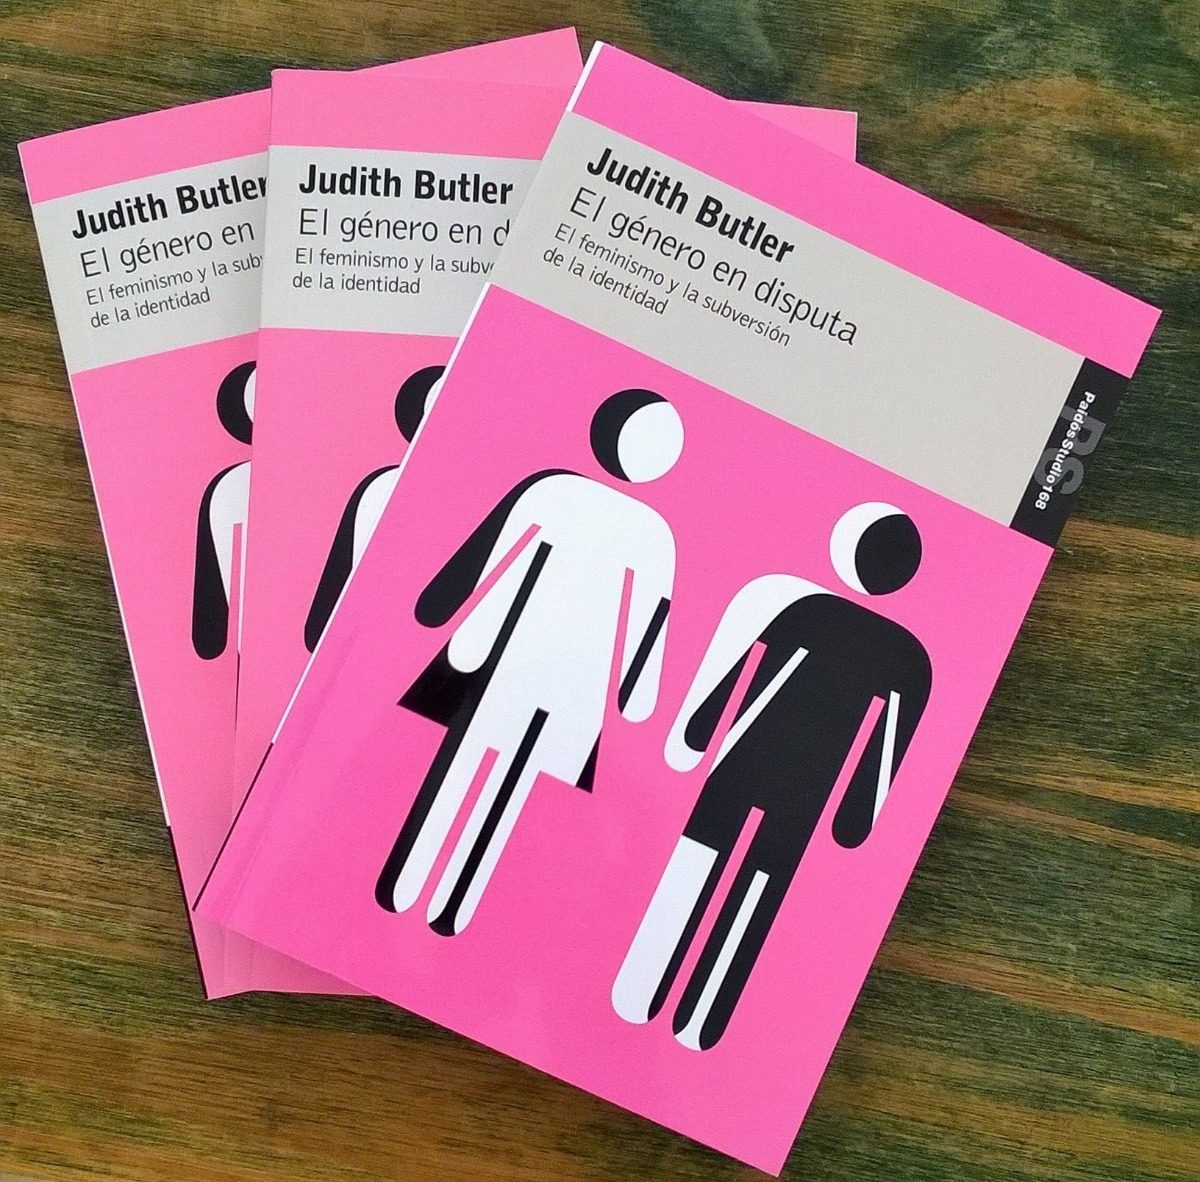 Judith Butler – El género en disputa. Una crítica necesaria.